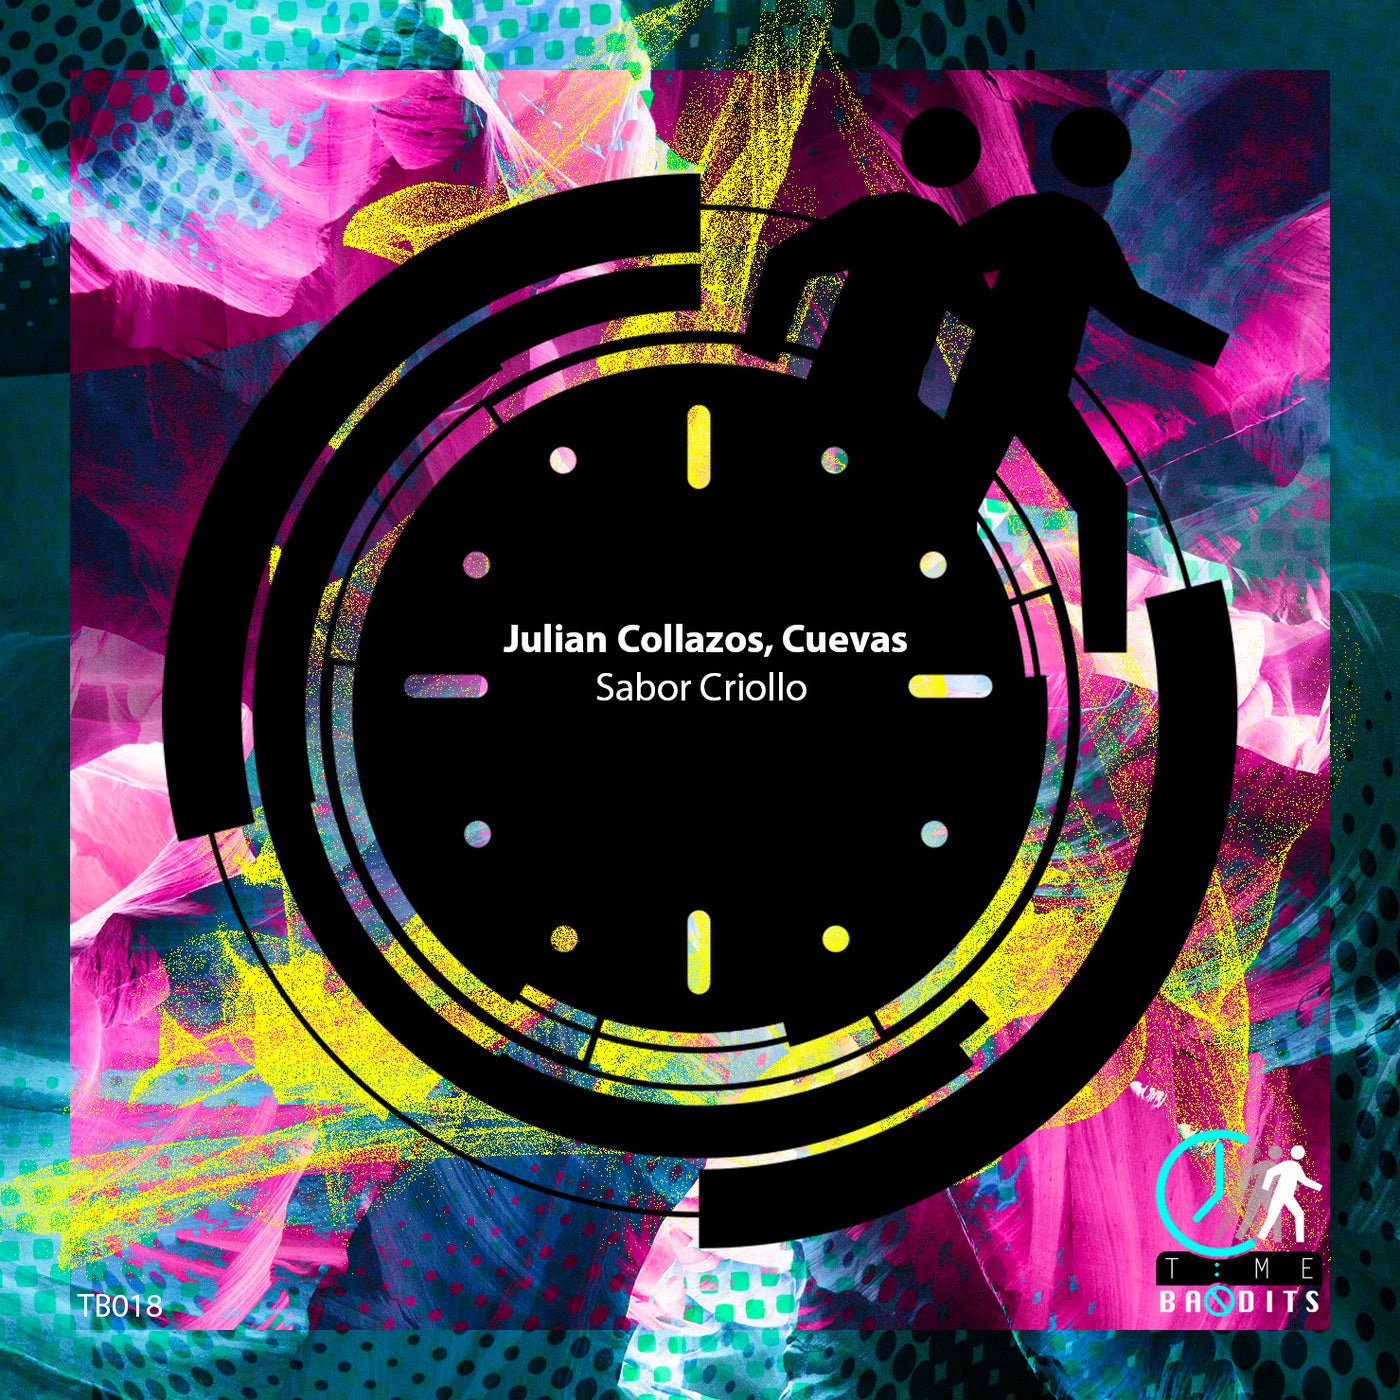 Julian Collazos, Cuevas (ES) – Sabor Criollo EP [TB018]